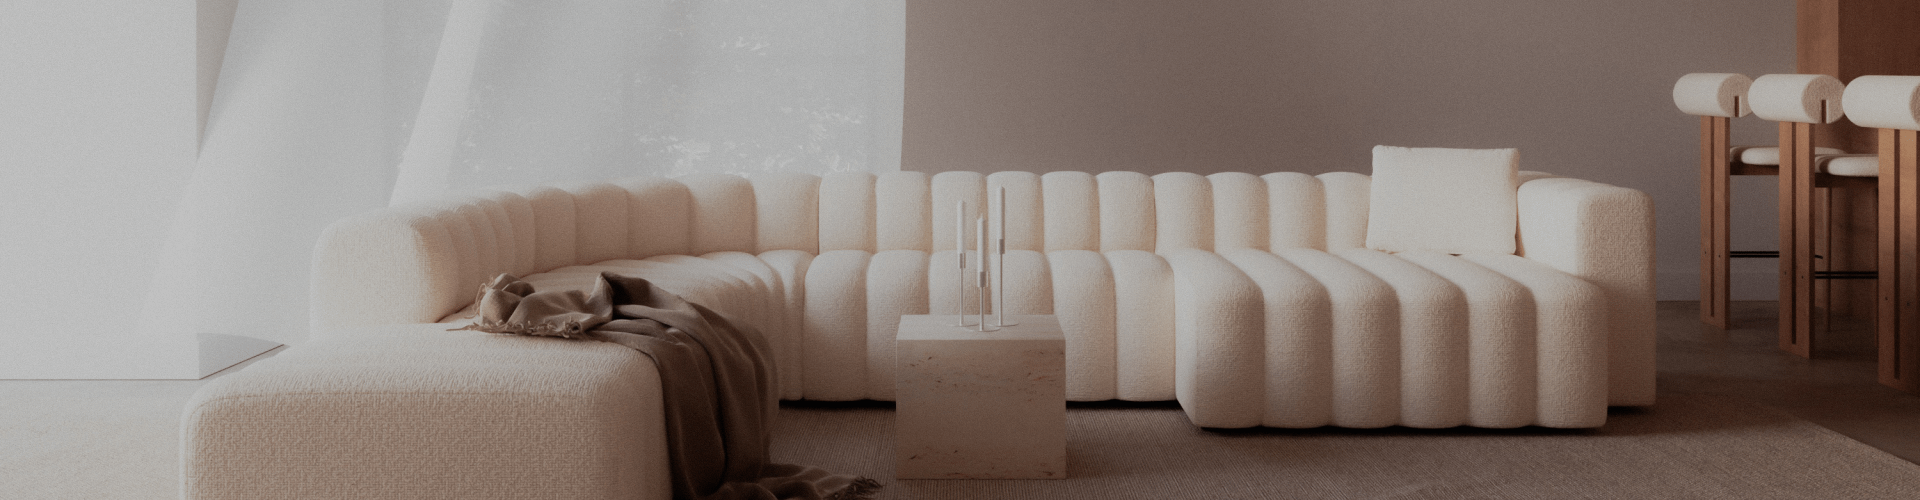 Eine weiße Couch in einem hell erleuchteten Raum mit Designermöbeln.